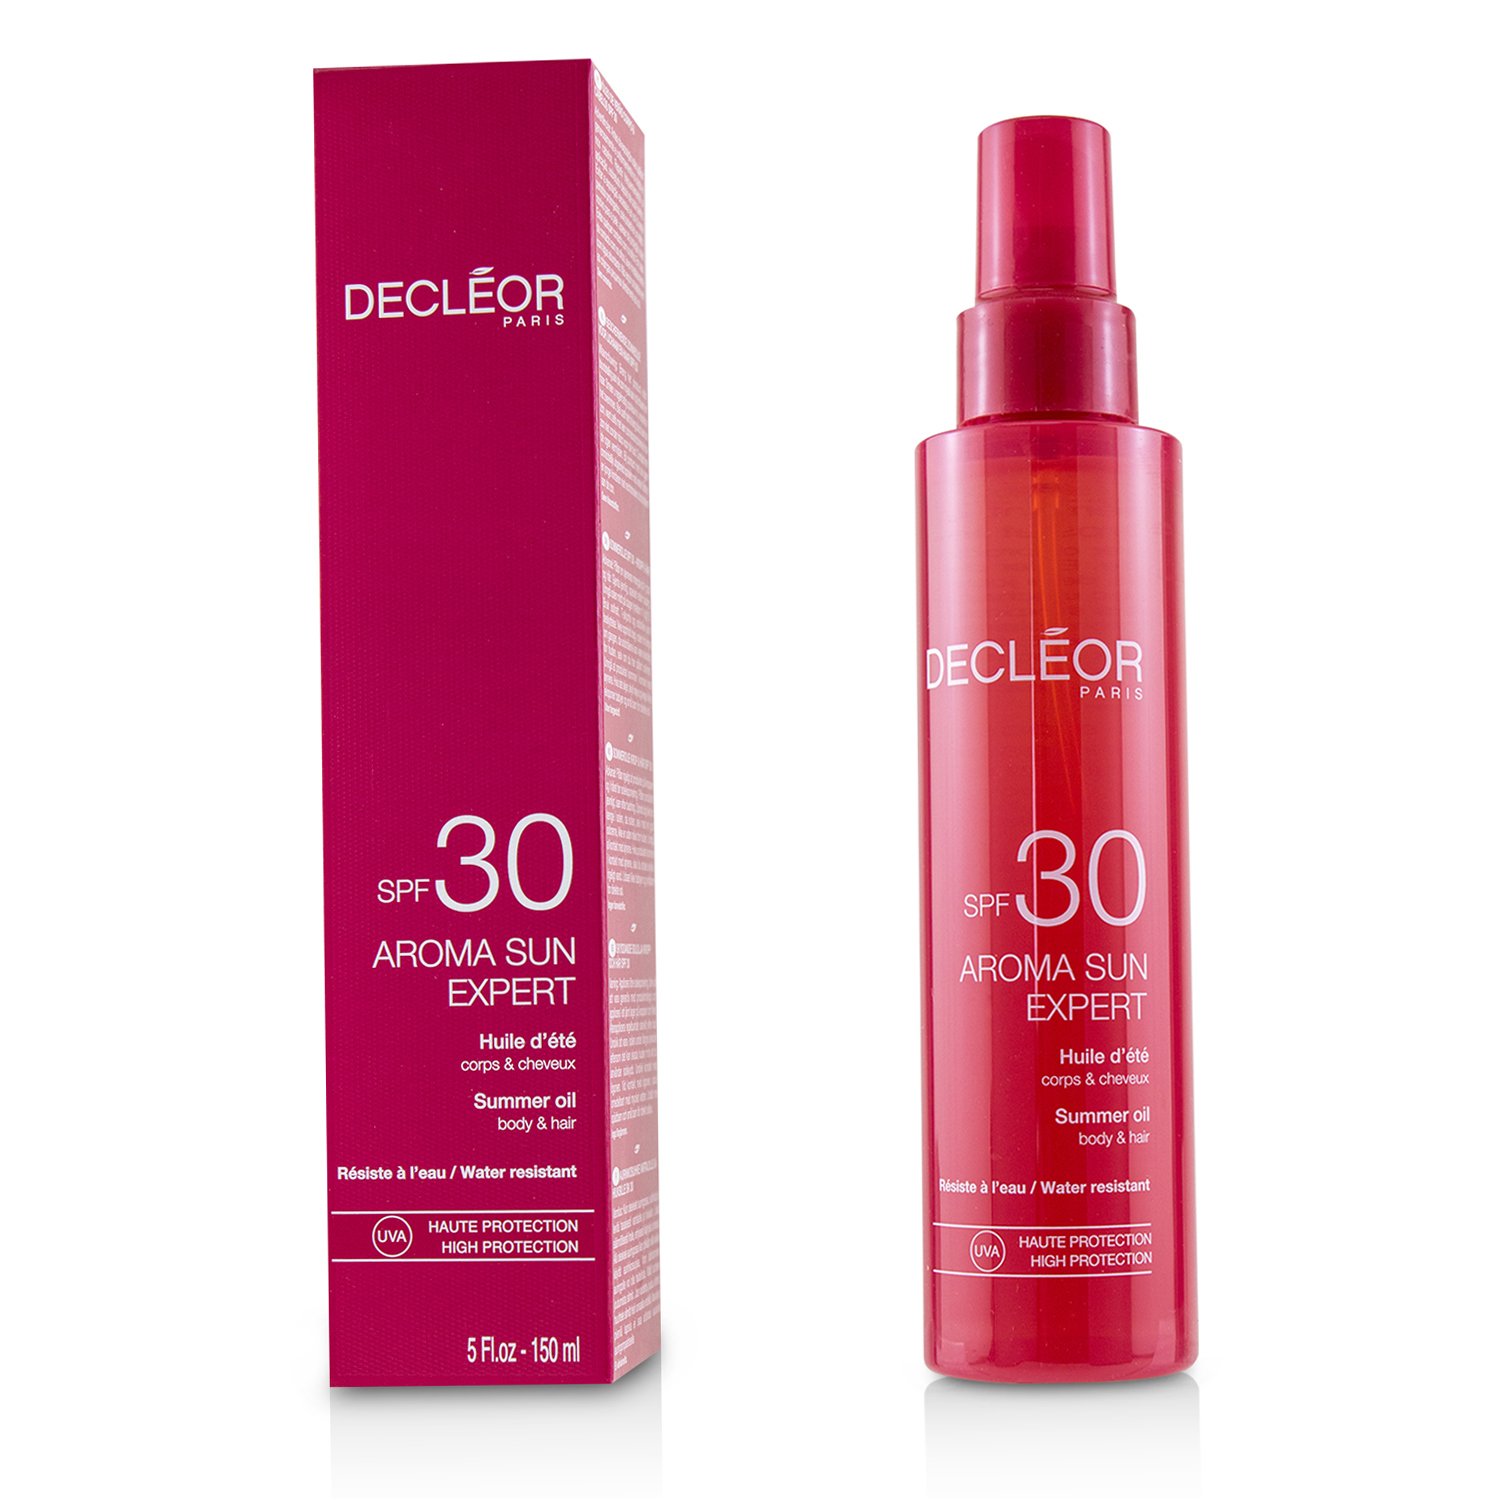 思妍麗 Decleor - 極緻高效防曬美體乳SPF 30 Aroma Sun Expert Summer Oil For Body & Hair SPF 30